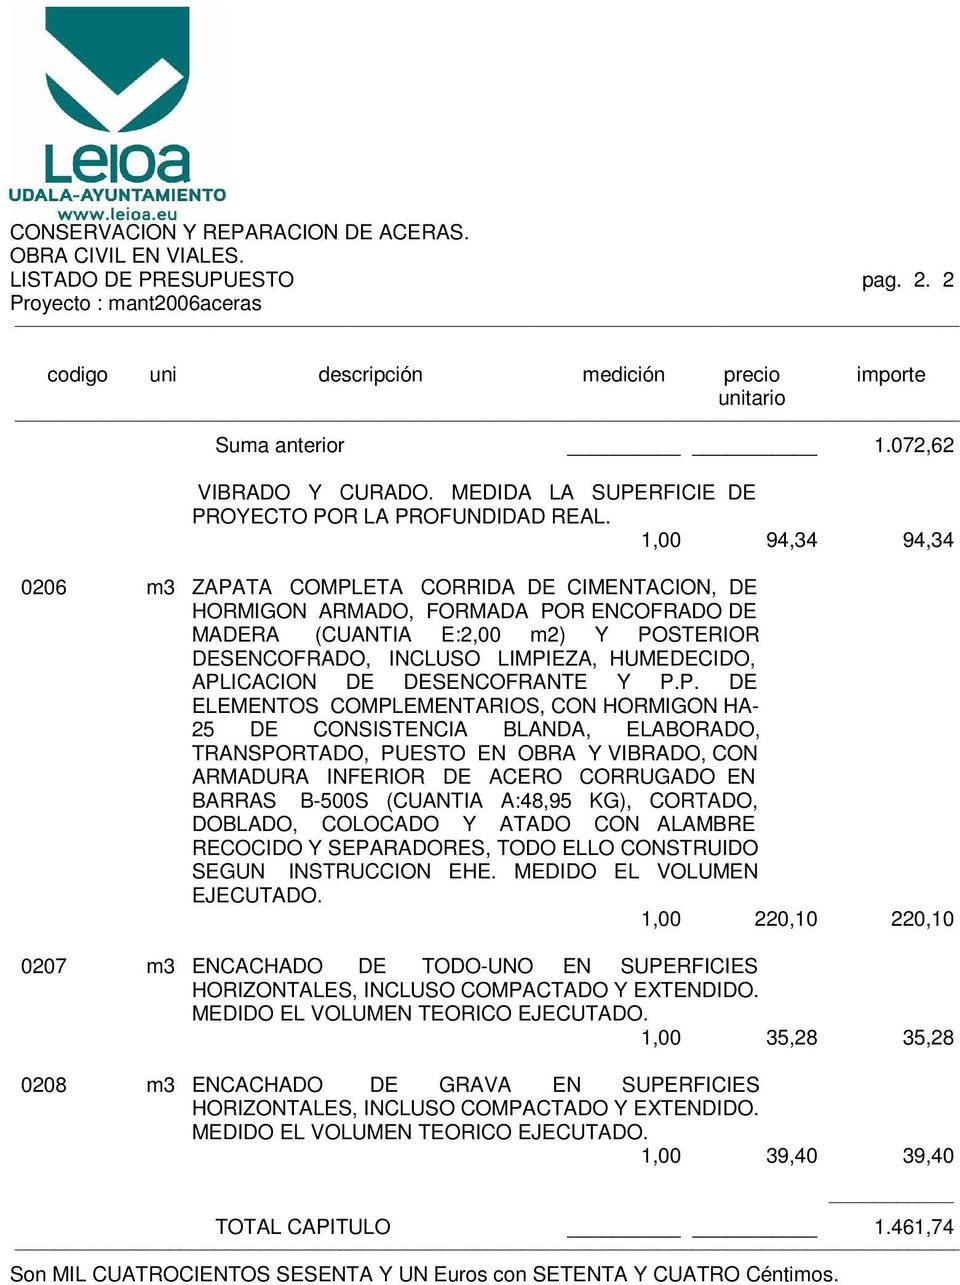 APLICACION DE DESENCOFRANTE Y P.P. DE ELEMENTOS COMPLEMENTARIOS, CON HORMIGON HA- 25 DE CONSISTENCIA BLANDA, ELABORADO, TRANSPORTADO, PUESTO EN OBRA Y VIBRADO, CON ARMADURA INFERIOR DE ACERO